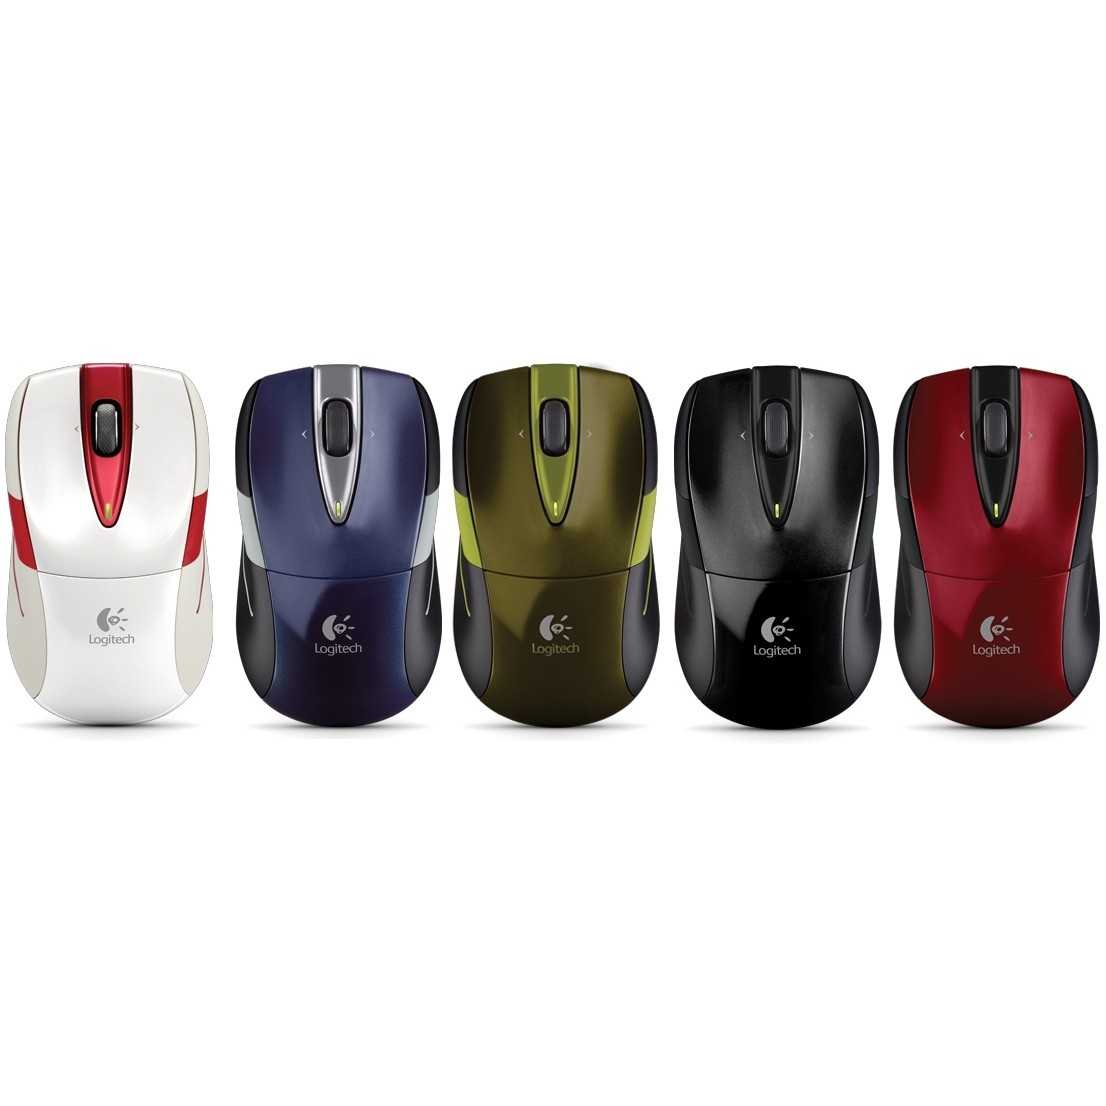 Logitech wireless mouse m525 white-red usb купить по акционной цене , отзывы и обзоры.